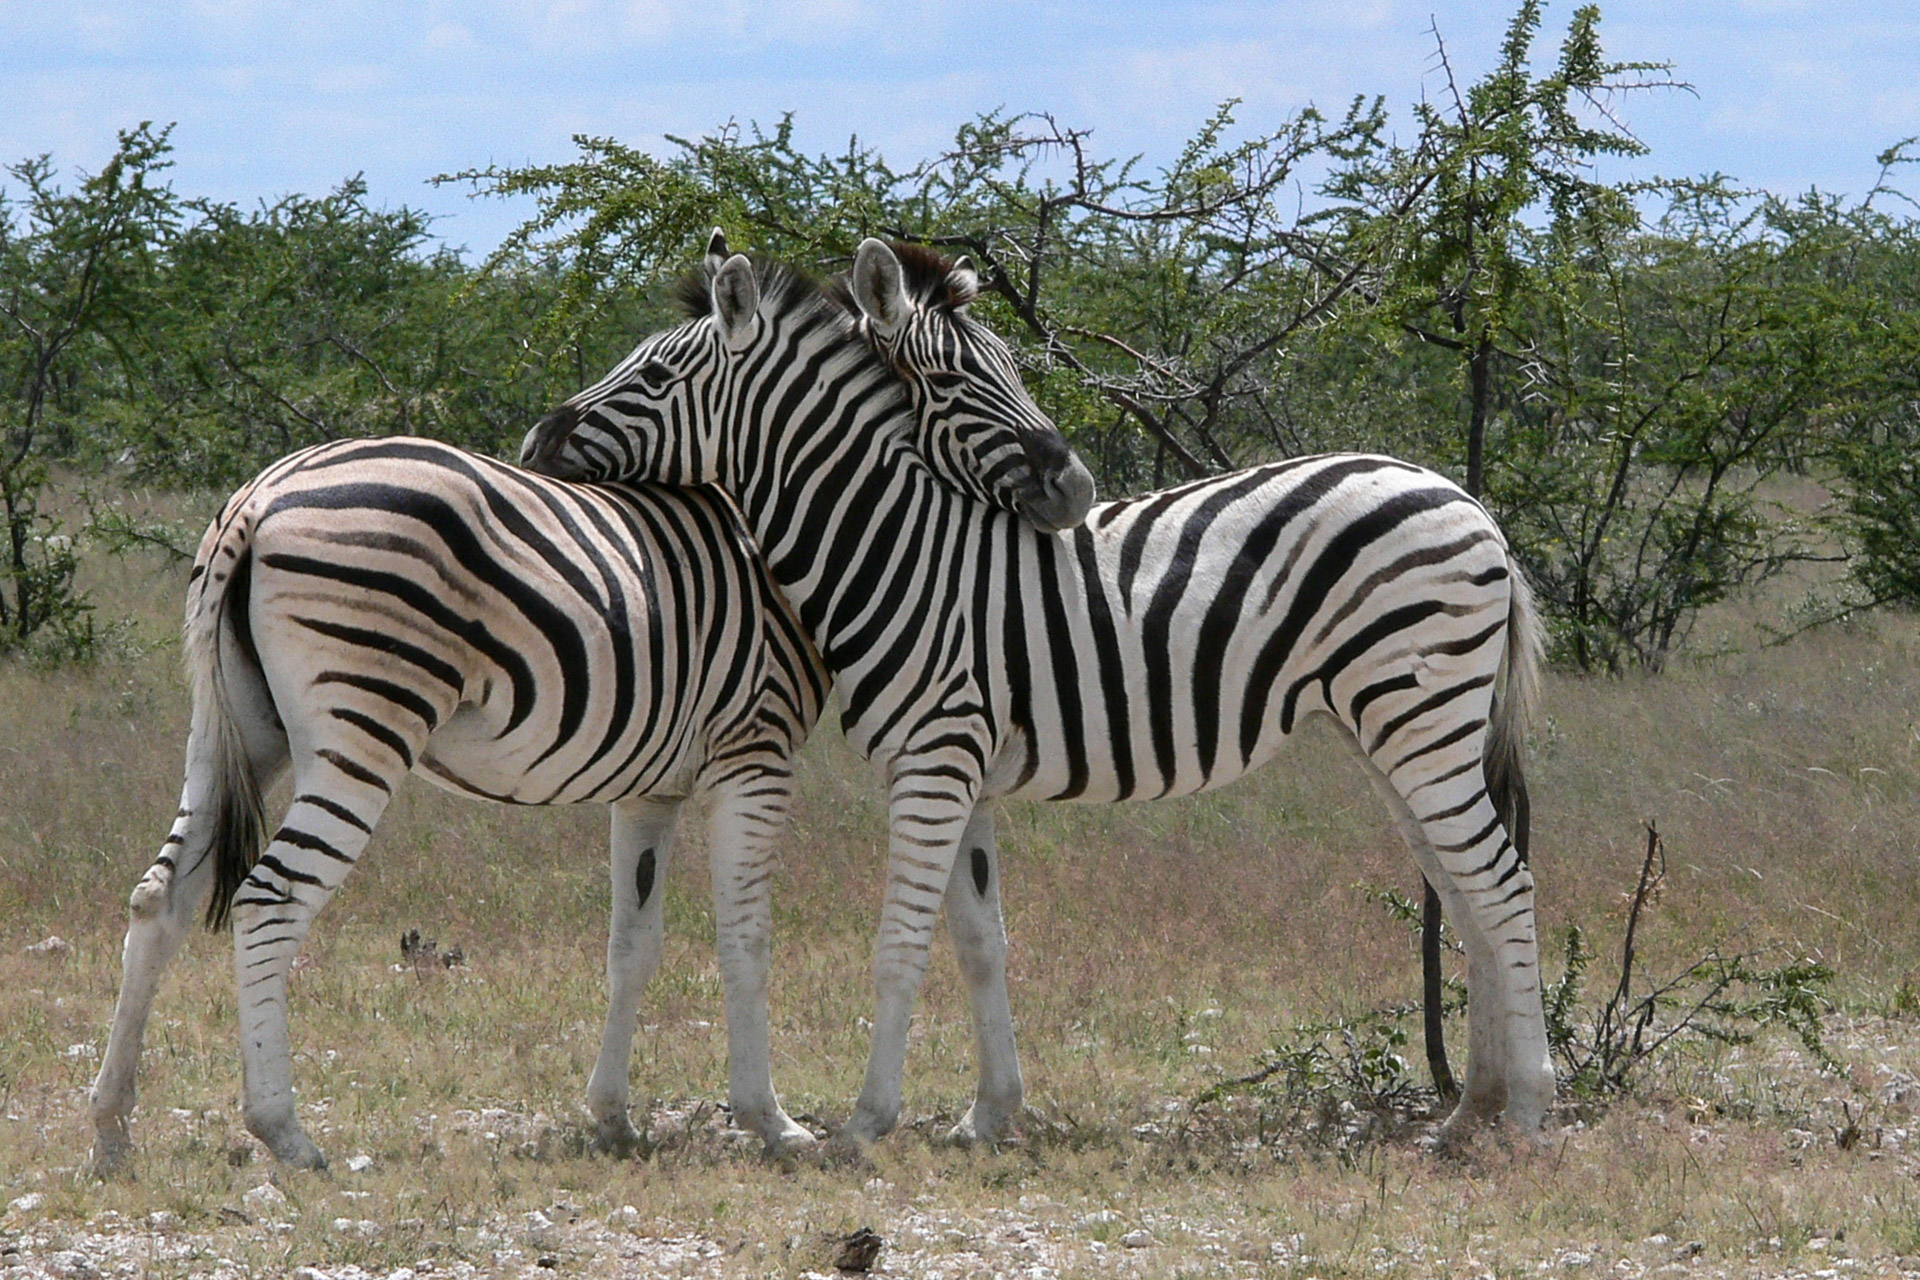 Vorbei an Zebras biken in Namibia